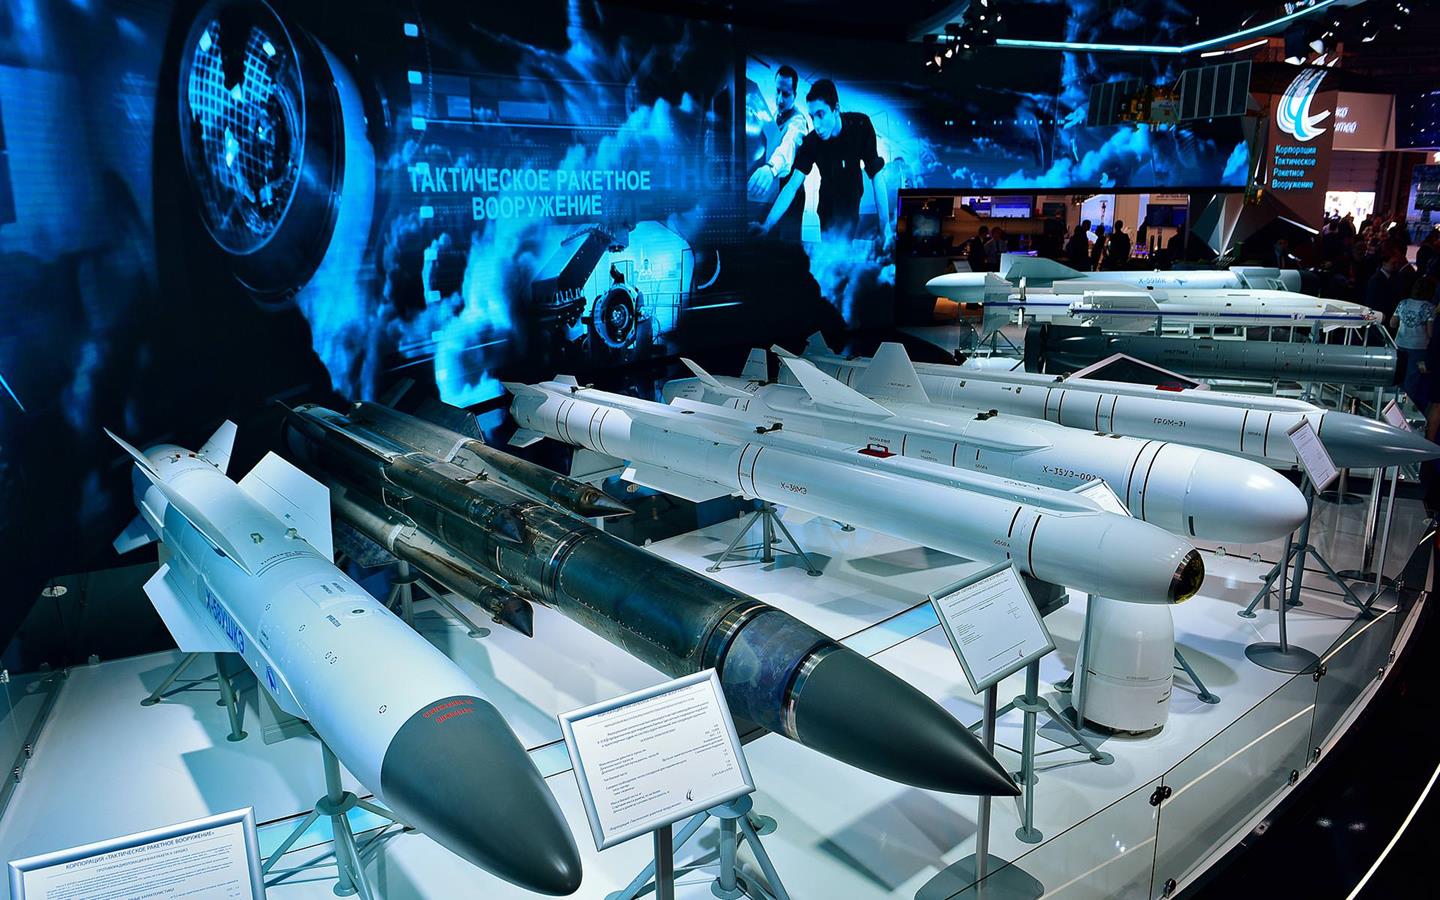 Rosja rozwija pociski nowej generacji. Mają zwalczać okręty nawodne i podwodne